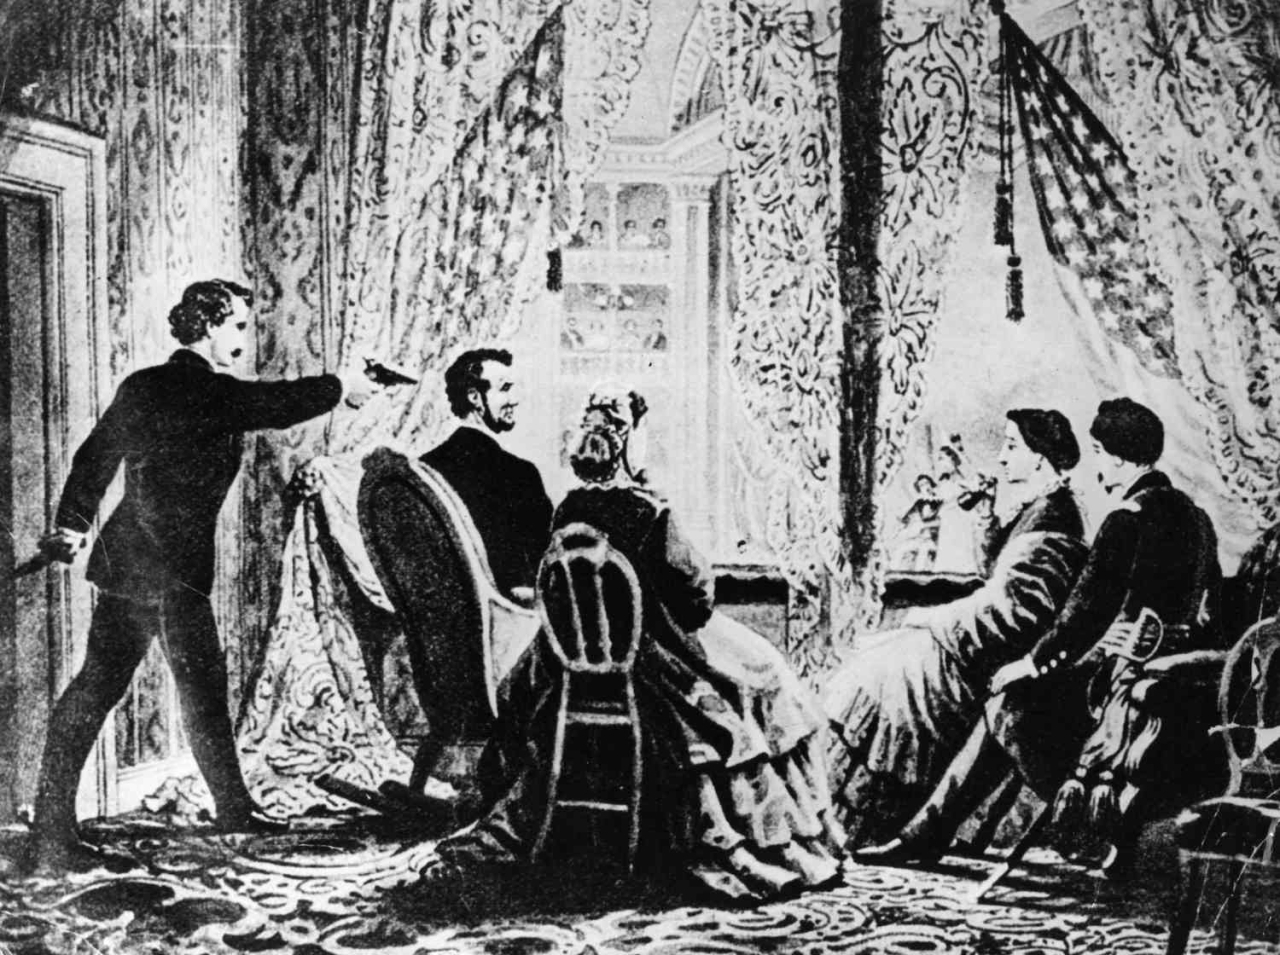 الصورة : 1865 اغتيال الرئيس الأمريكي أبراهام لينكون بالرصاص خلال مشاهدته عرضاً مسرحياً في واشنطن.